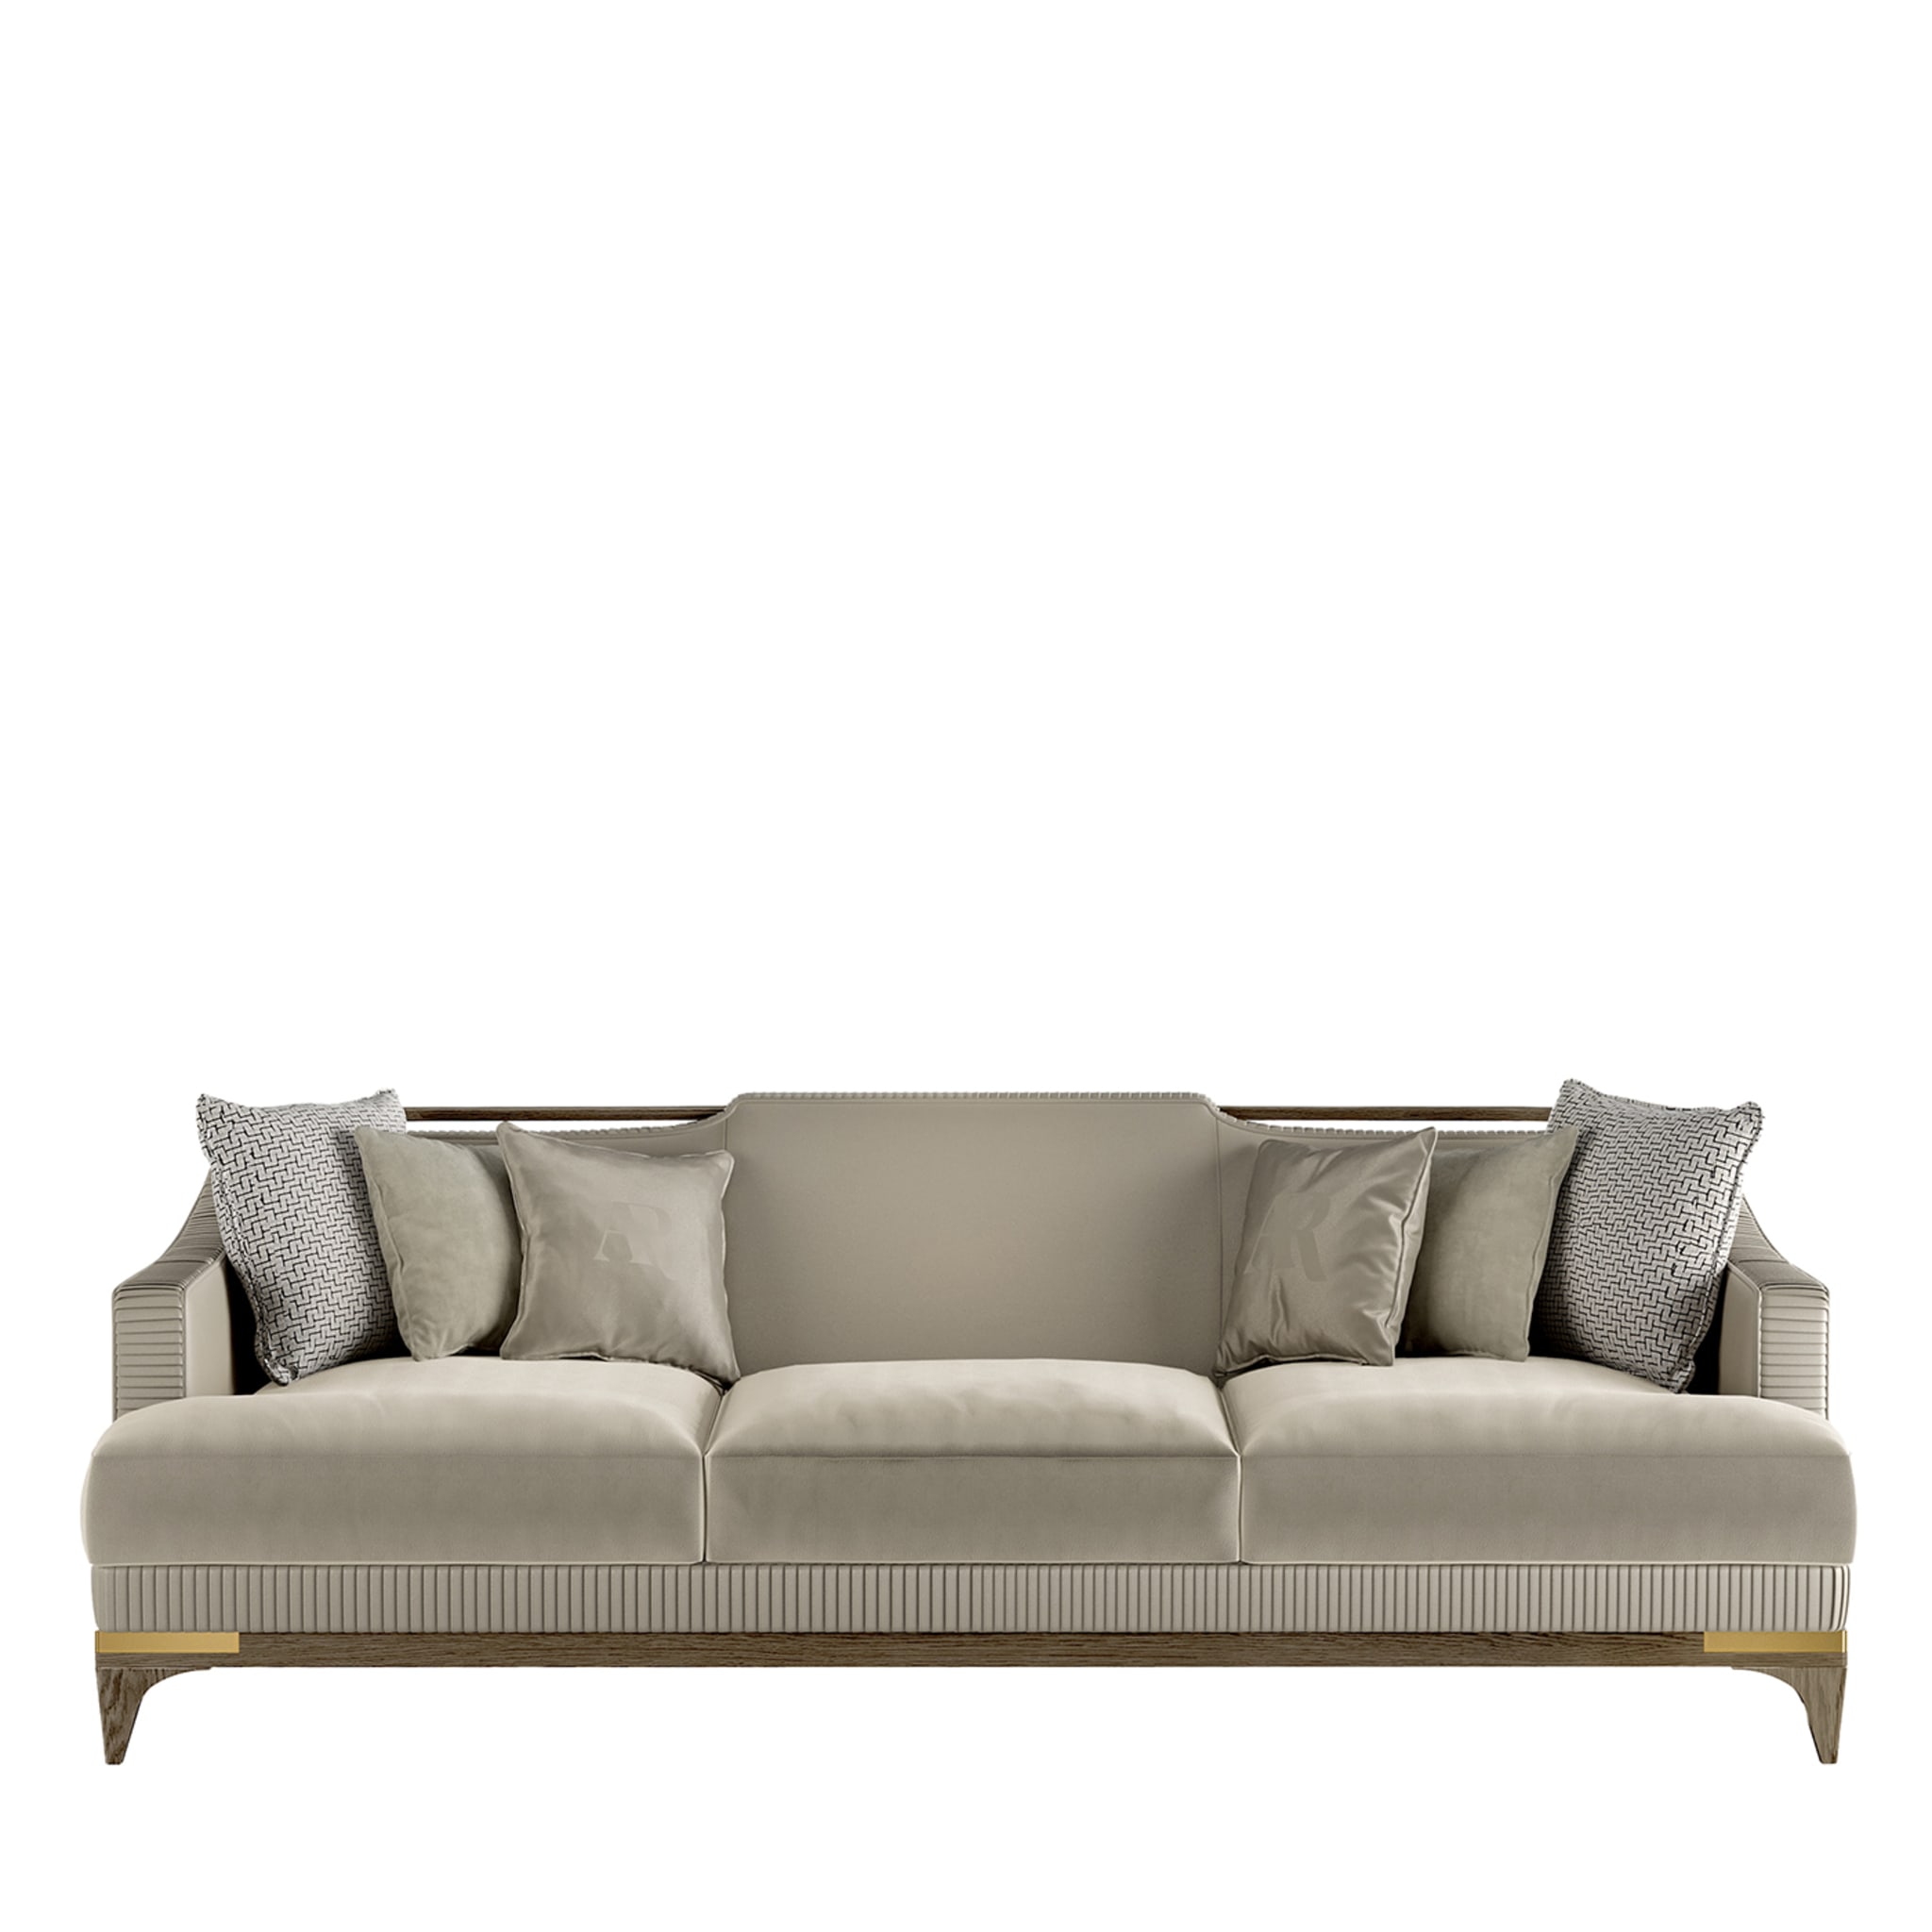 Beigefarbenes Sofa mit 3 Sitzen aus Leder und Stoff - Hauptansicht